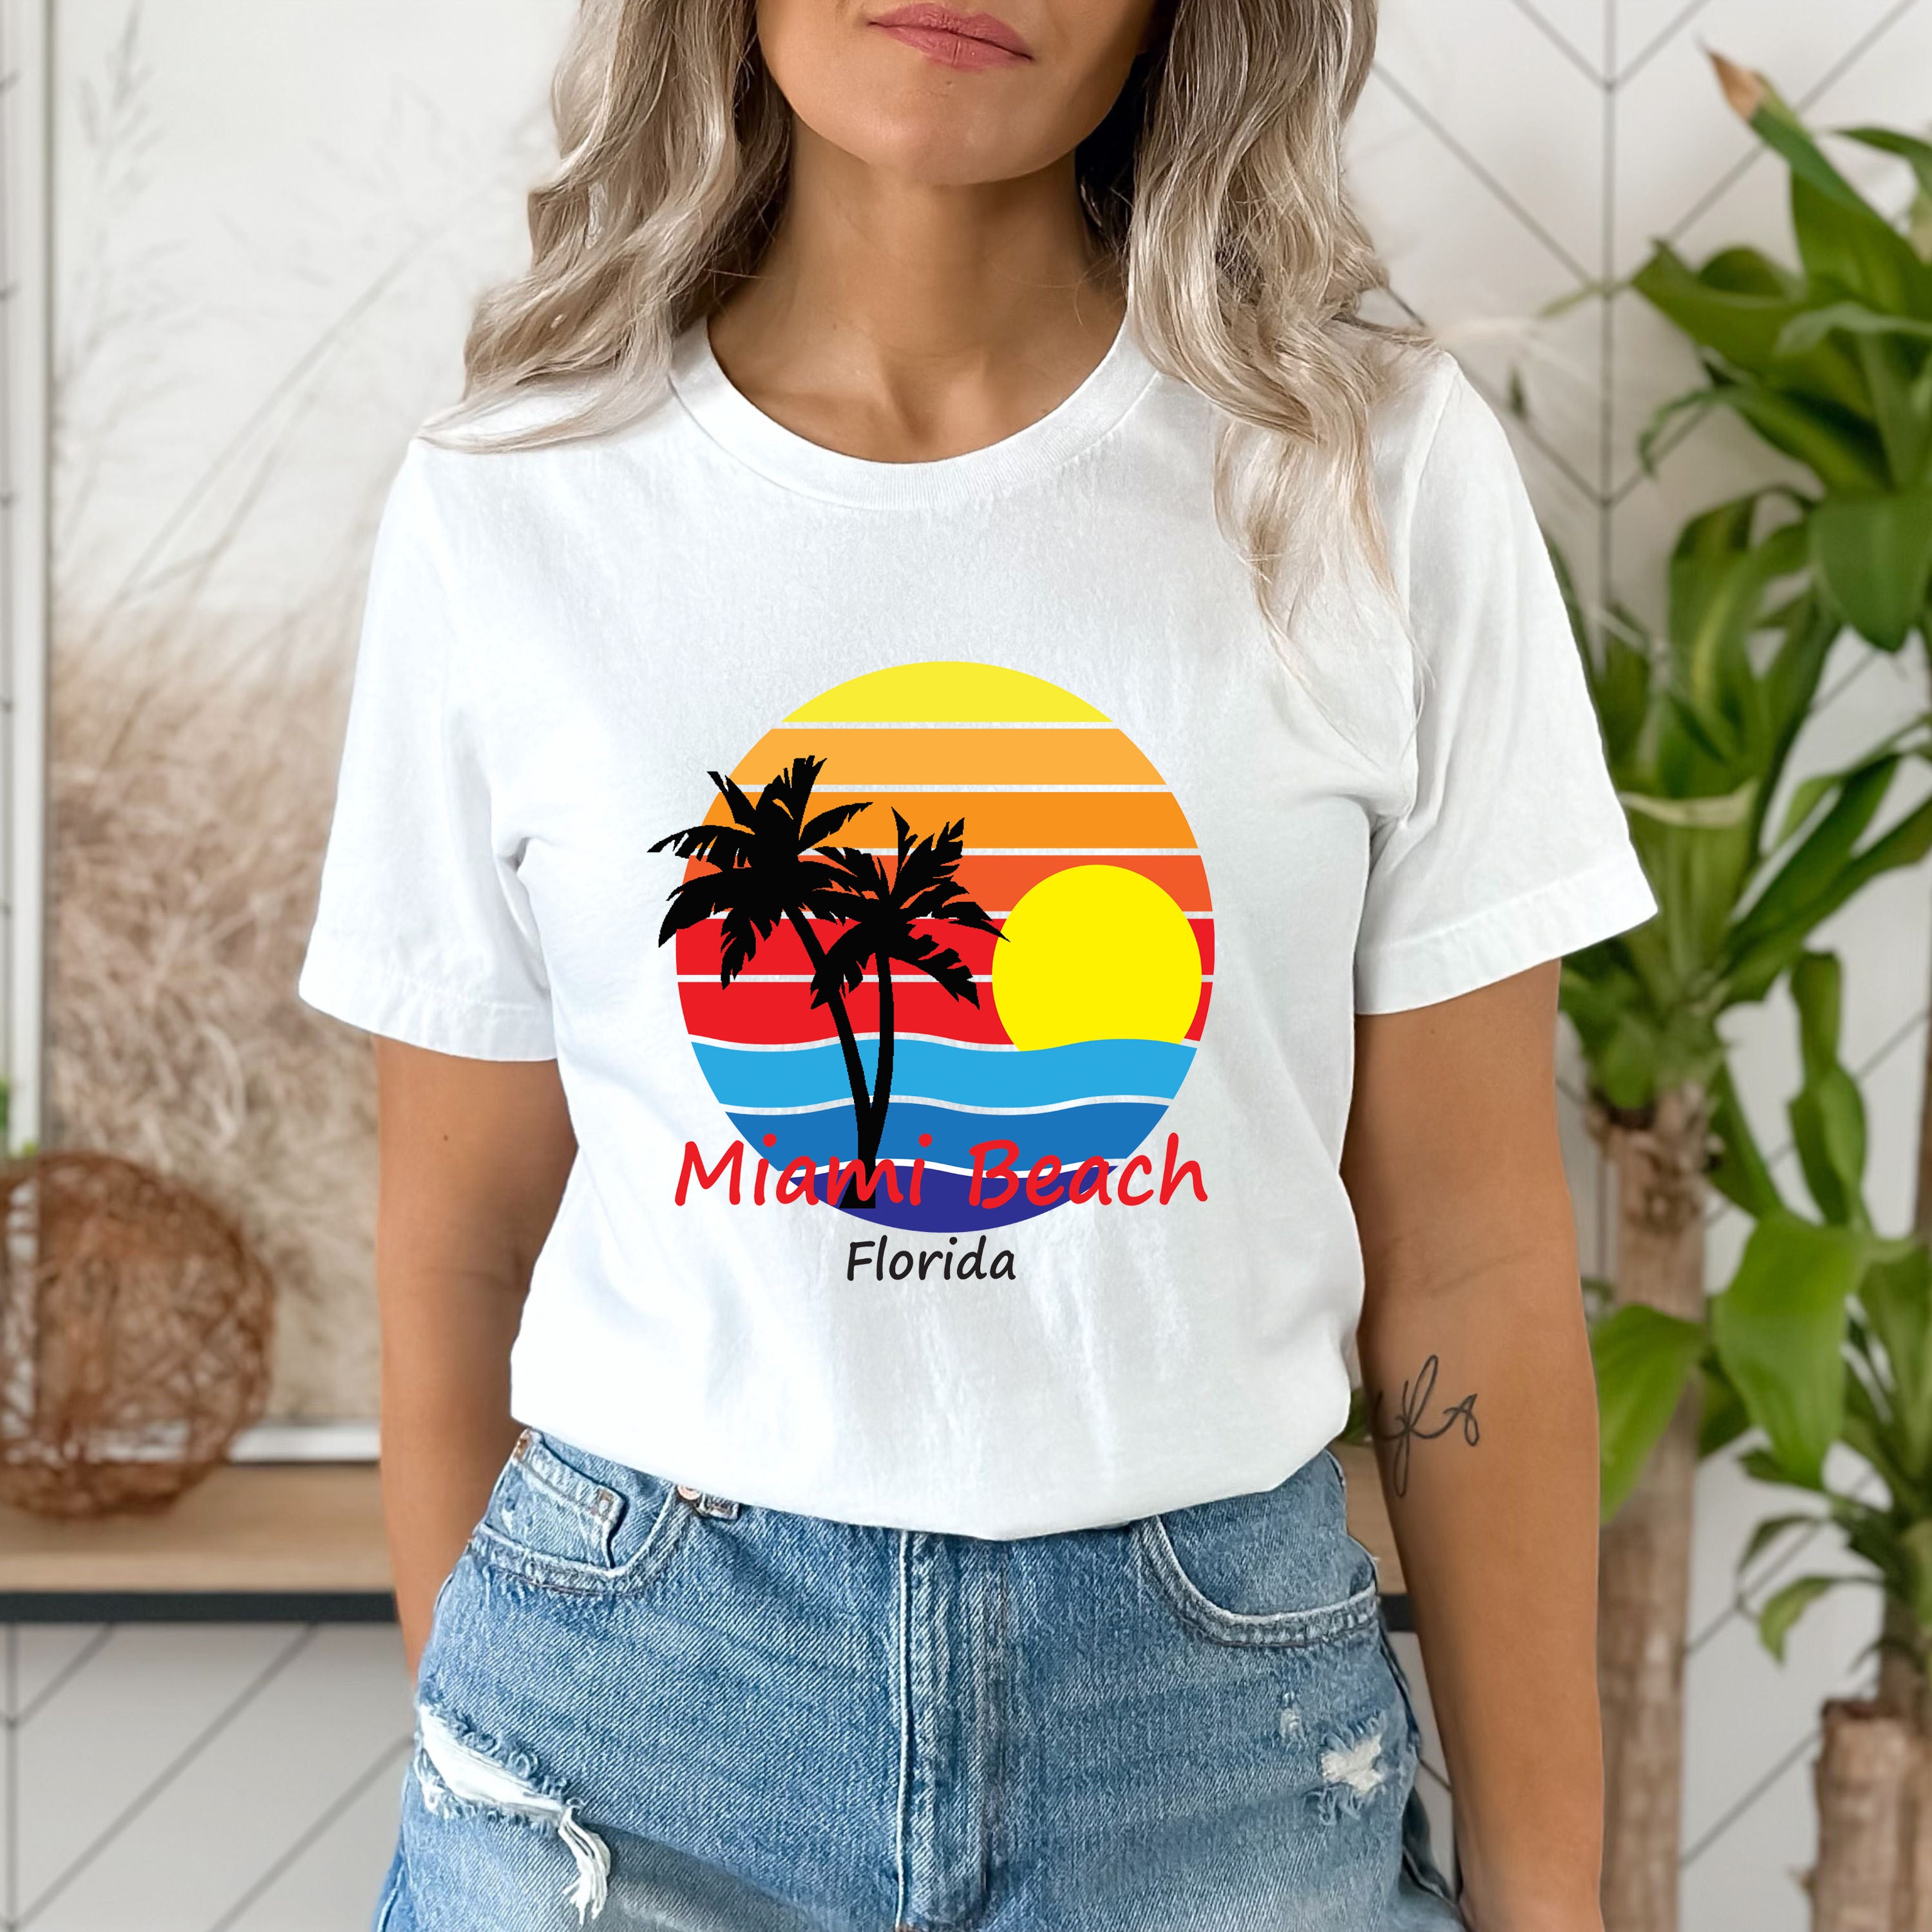 "Miami Beach Florida",T-Shirt.